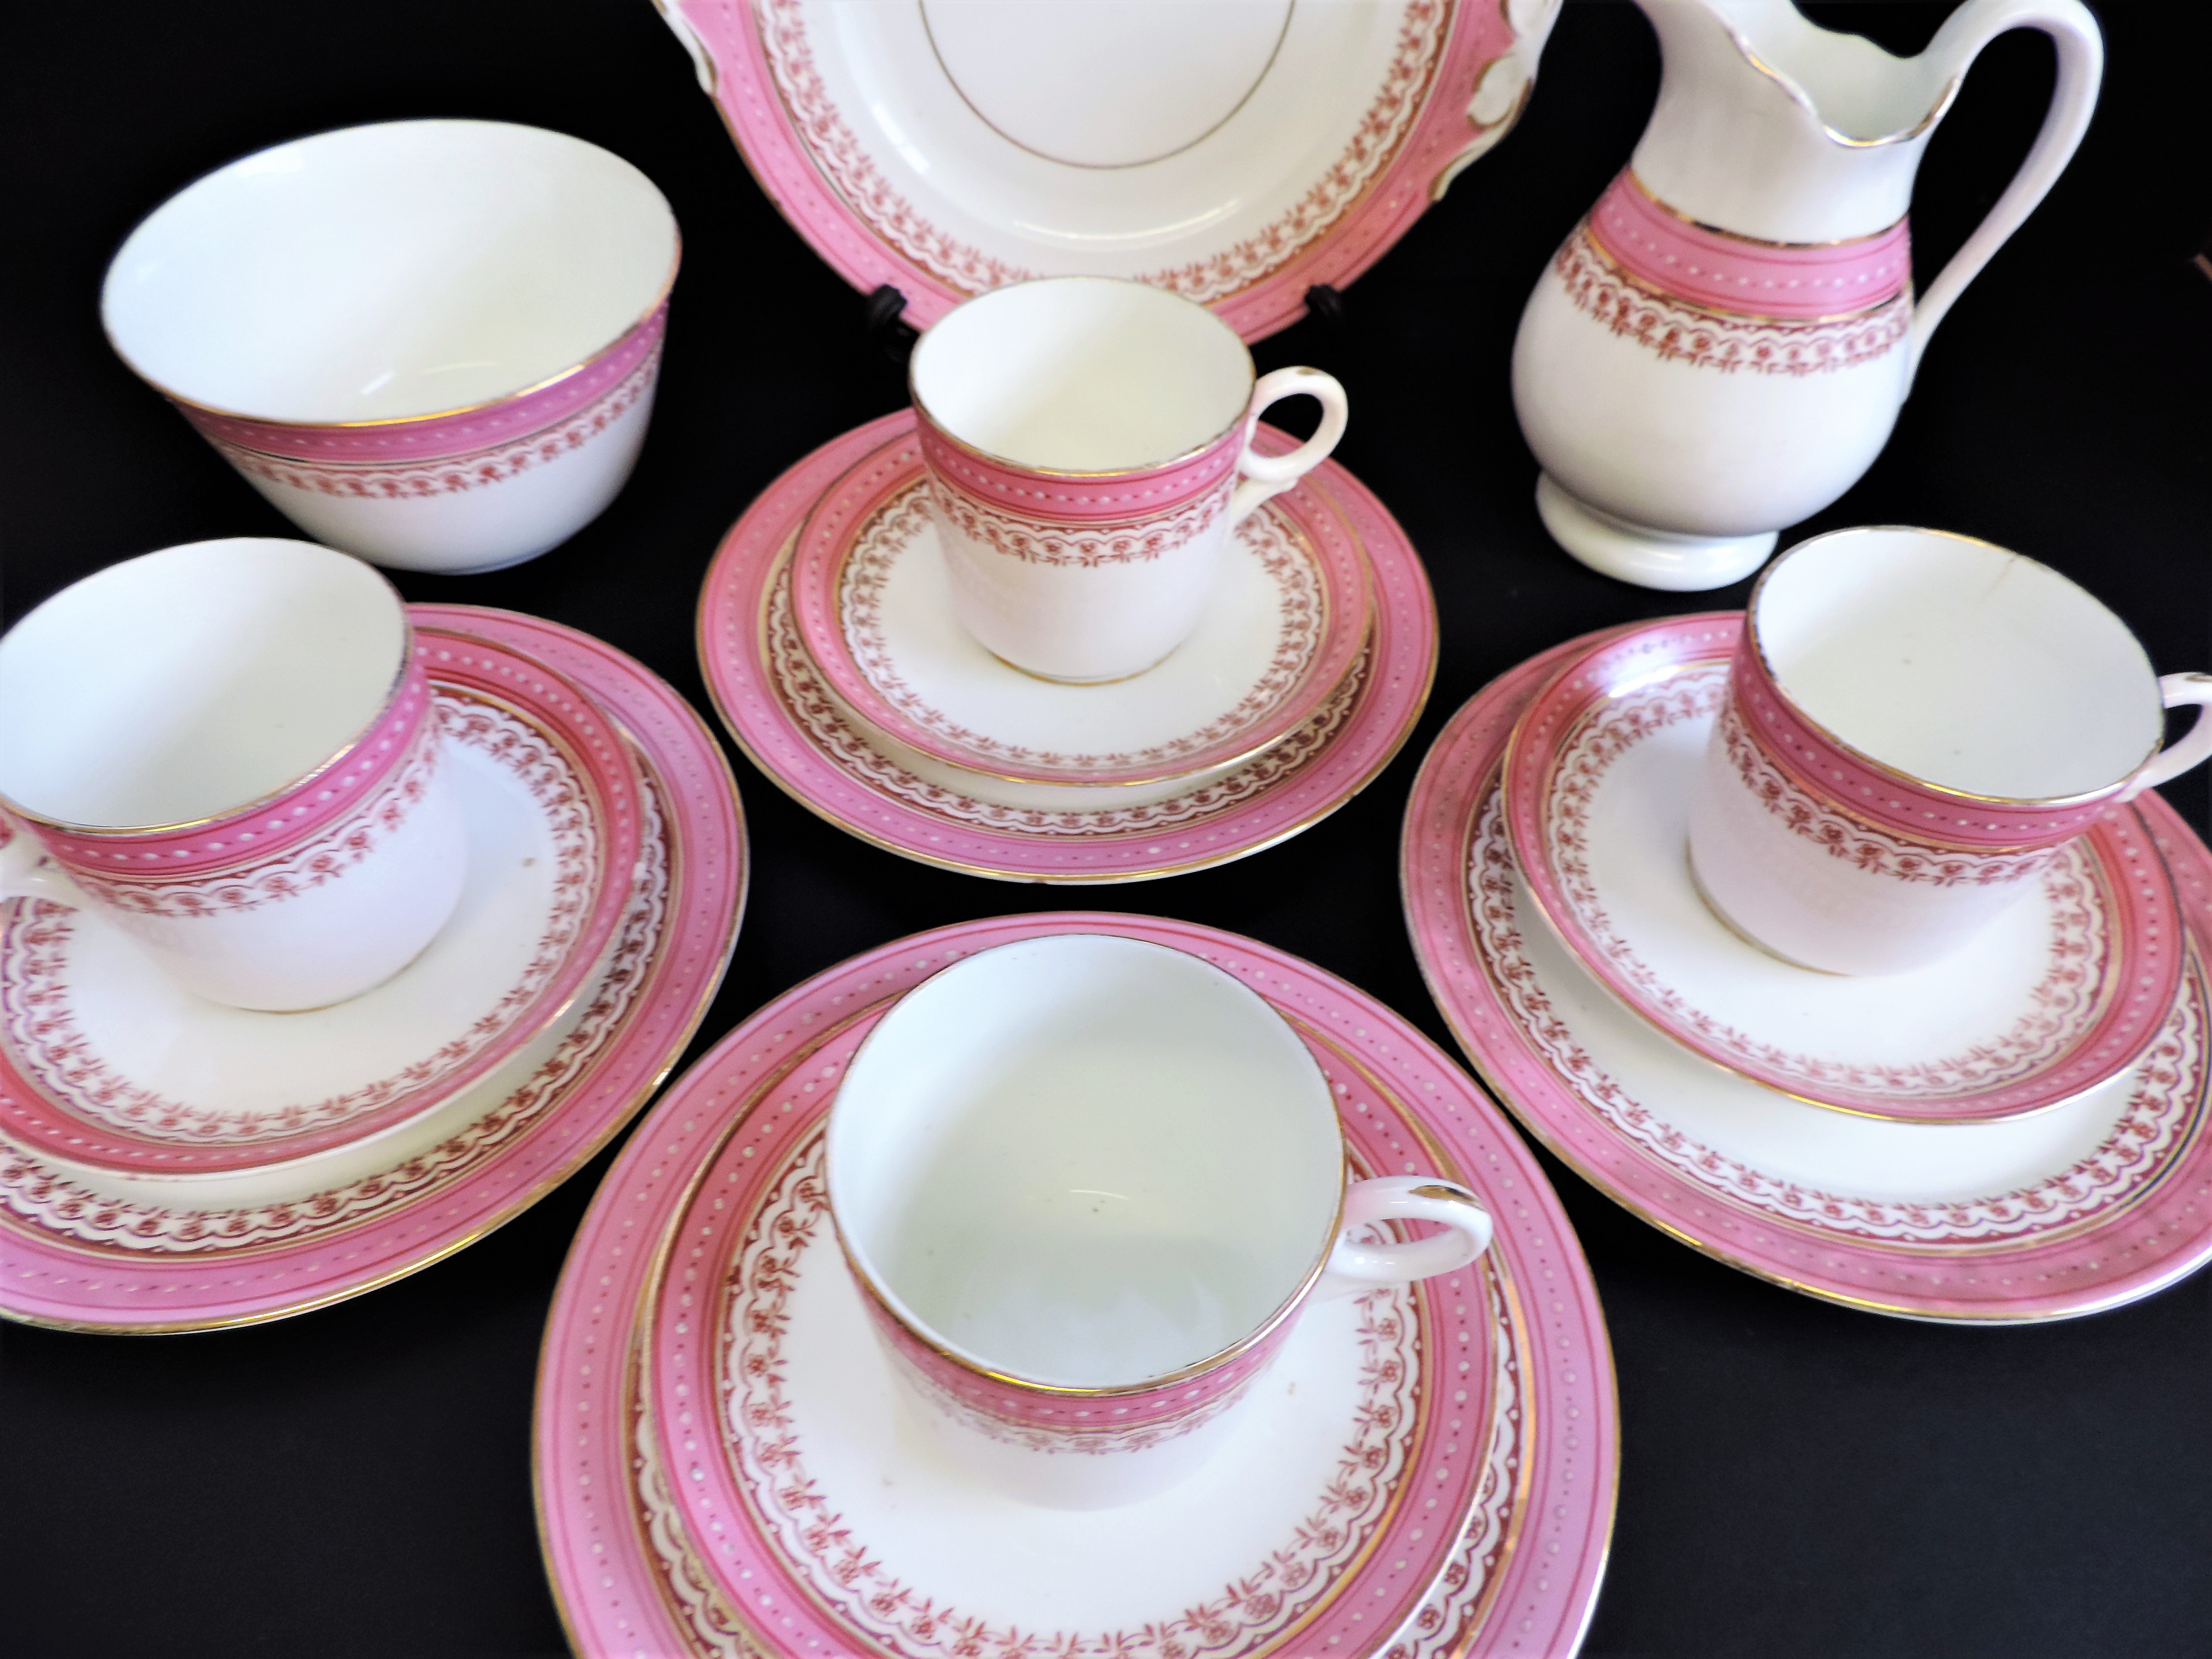 Vintage 19 piece Porcelain Breakfast/Tea Set for 4 People - Image 22 of 24